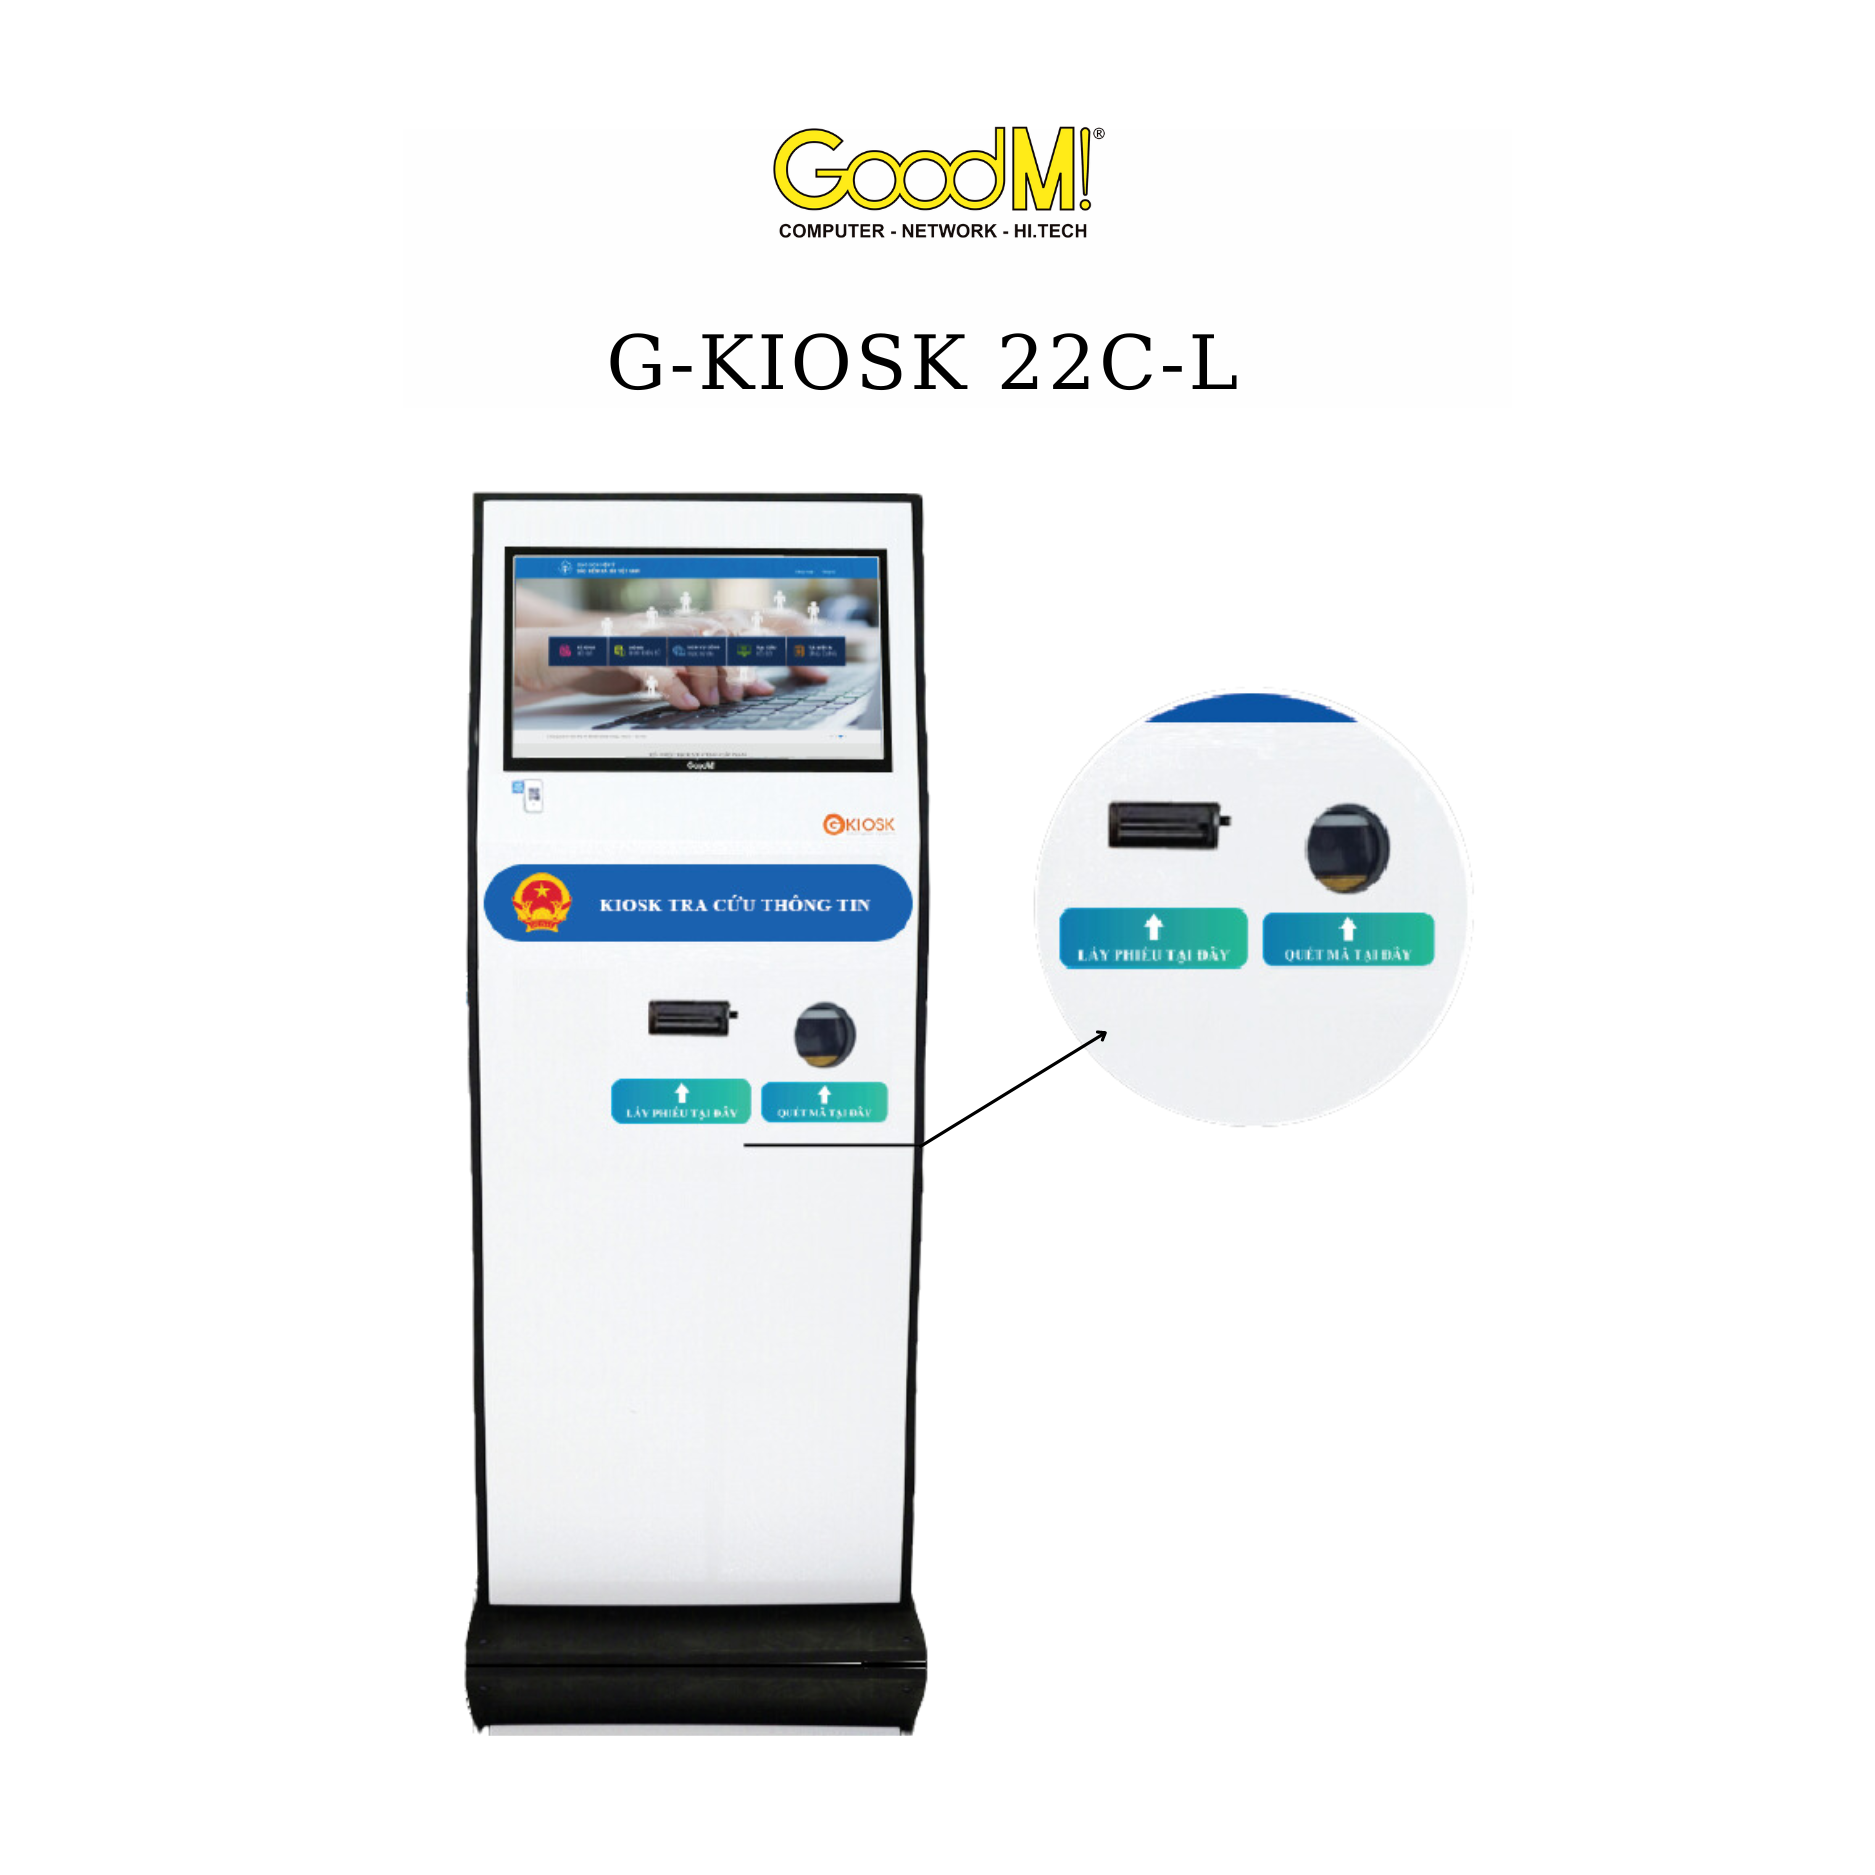  Kiosk Tra Cứu Thông Tin GoodM GKiosk 22C-L (Series) 